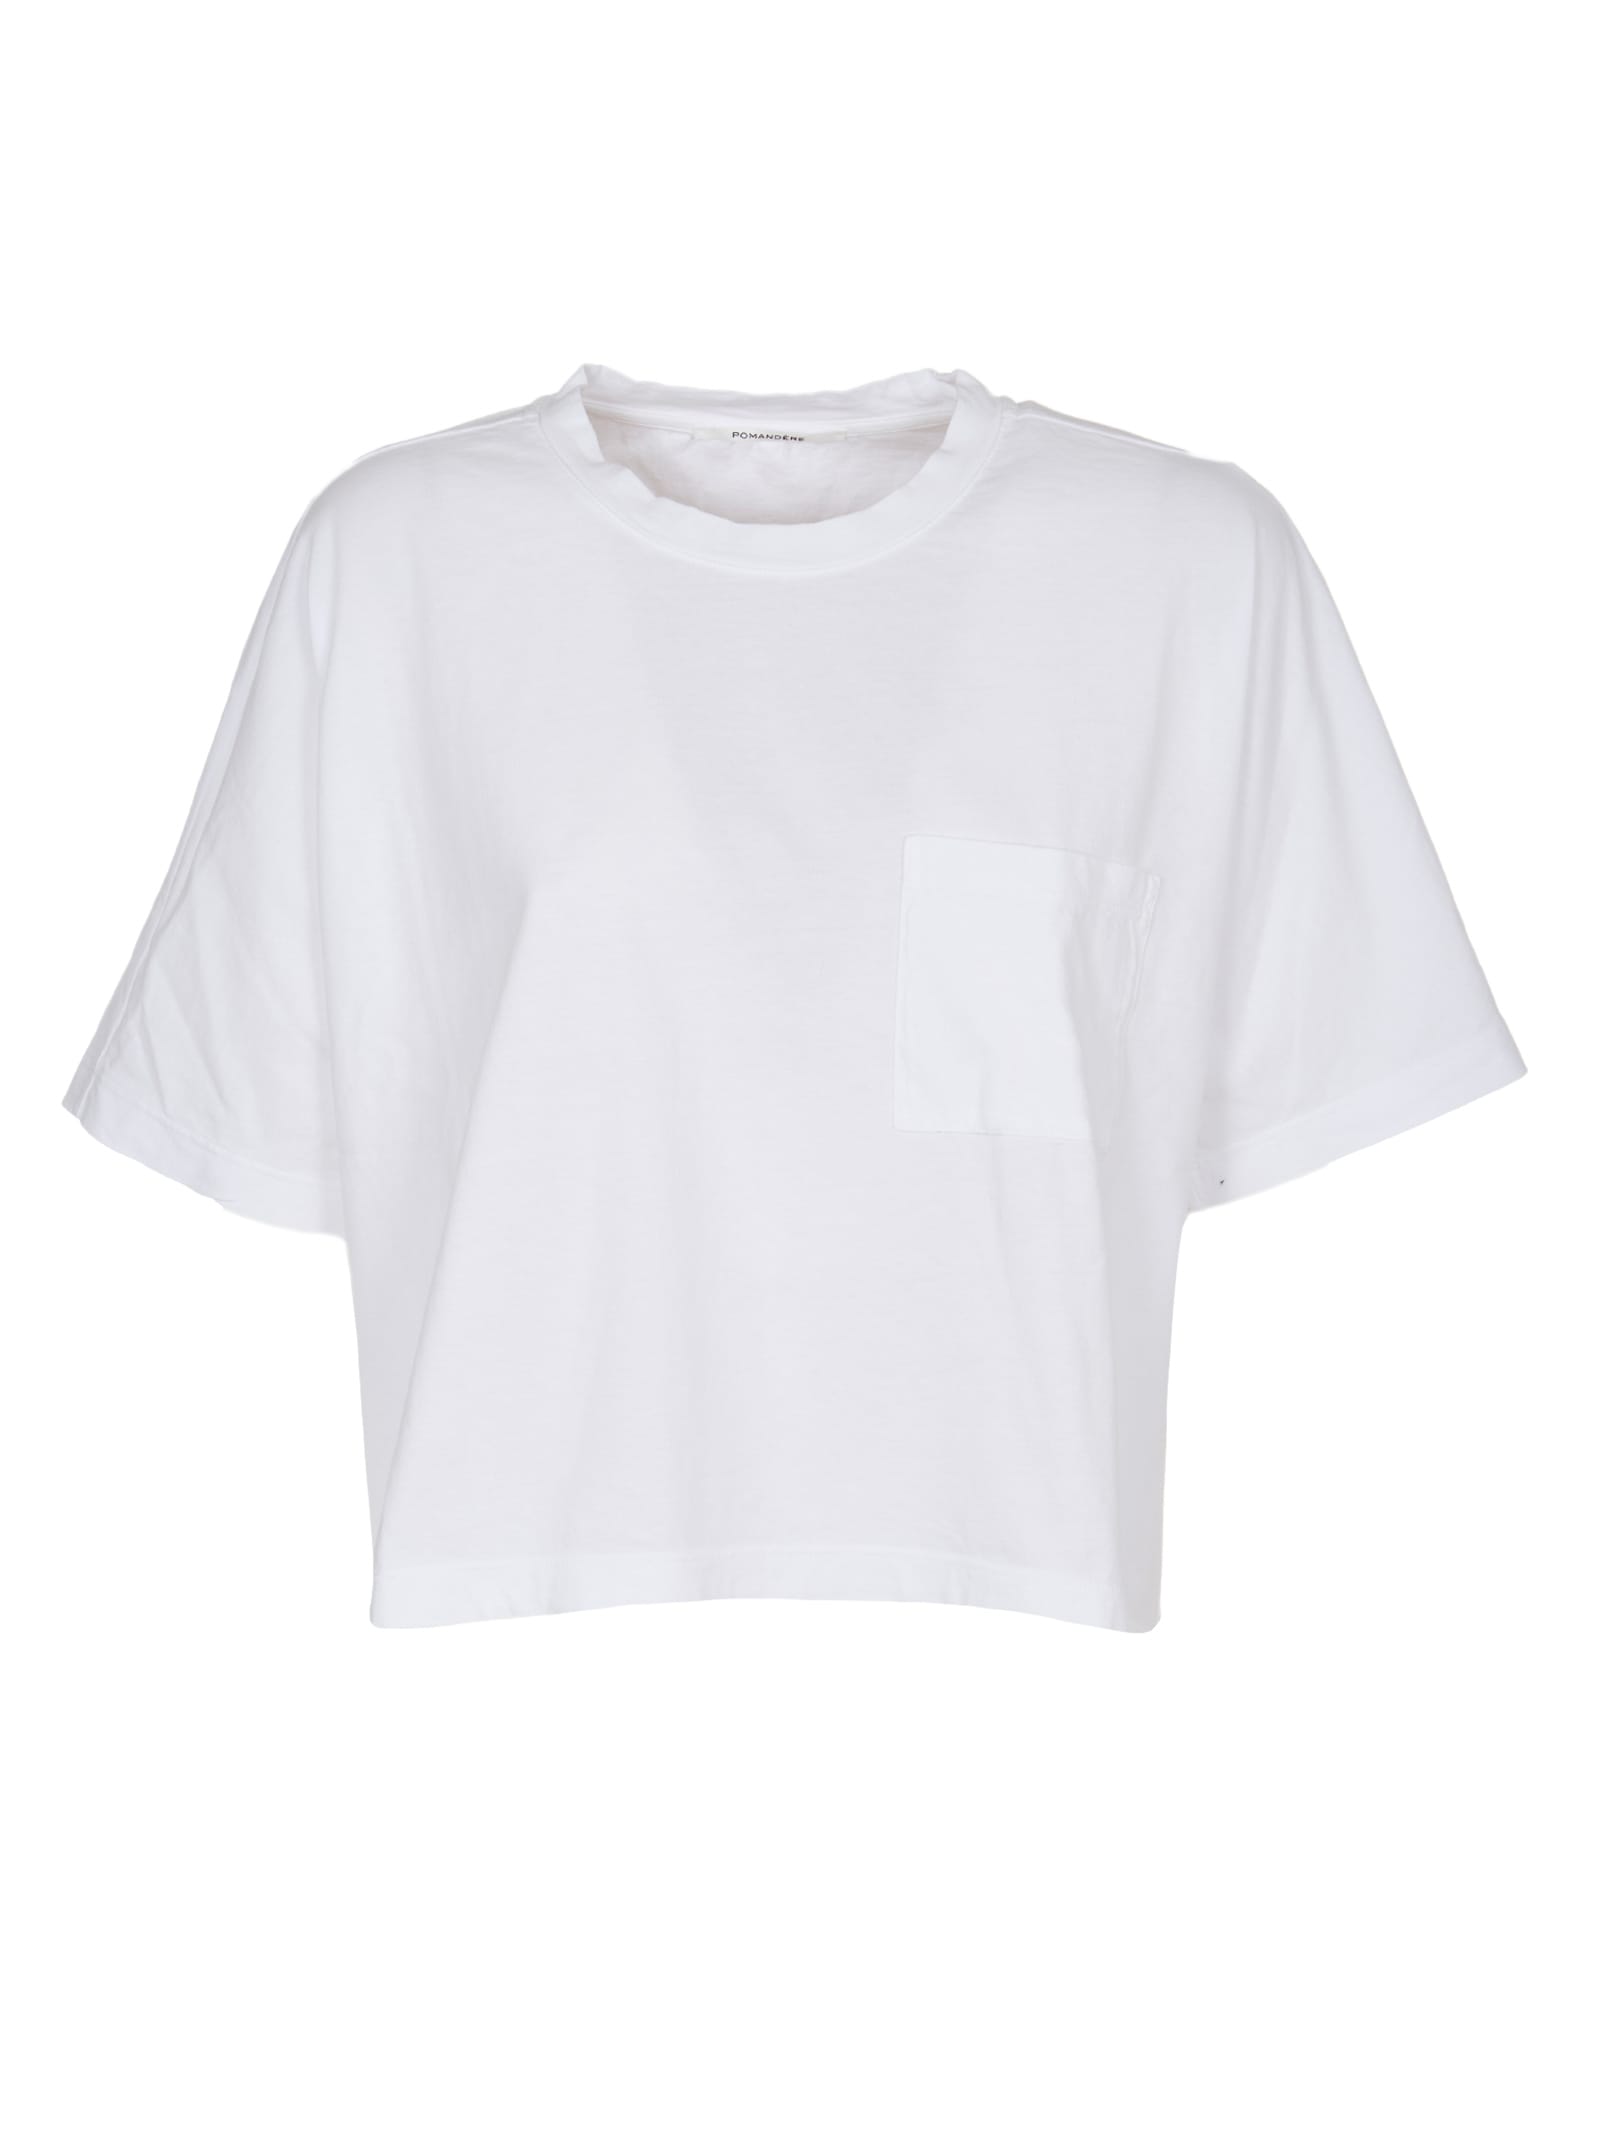 Pomandère White T-shirts